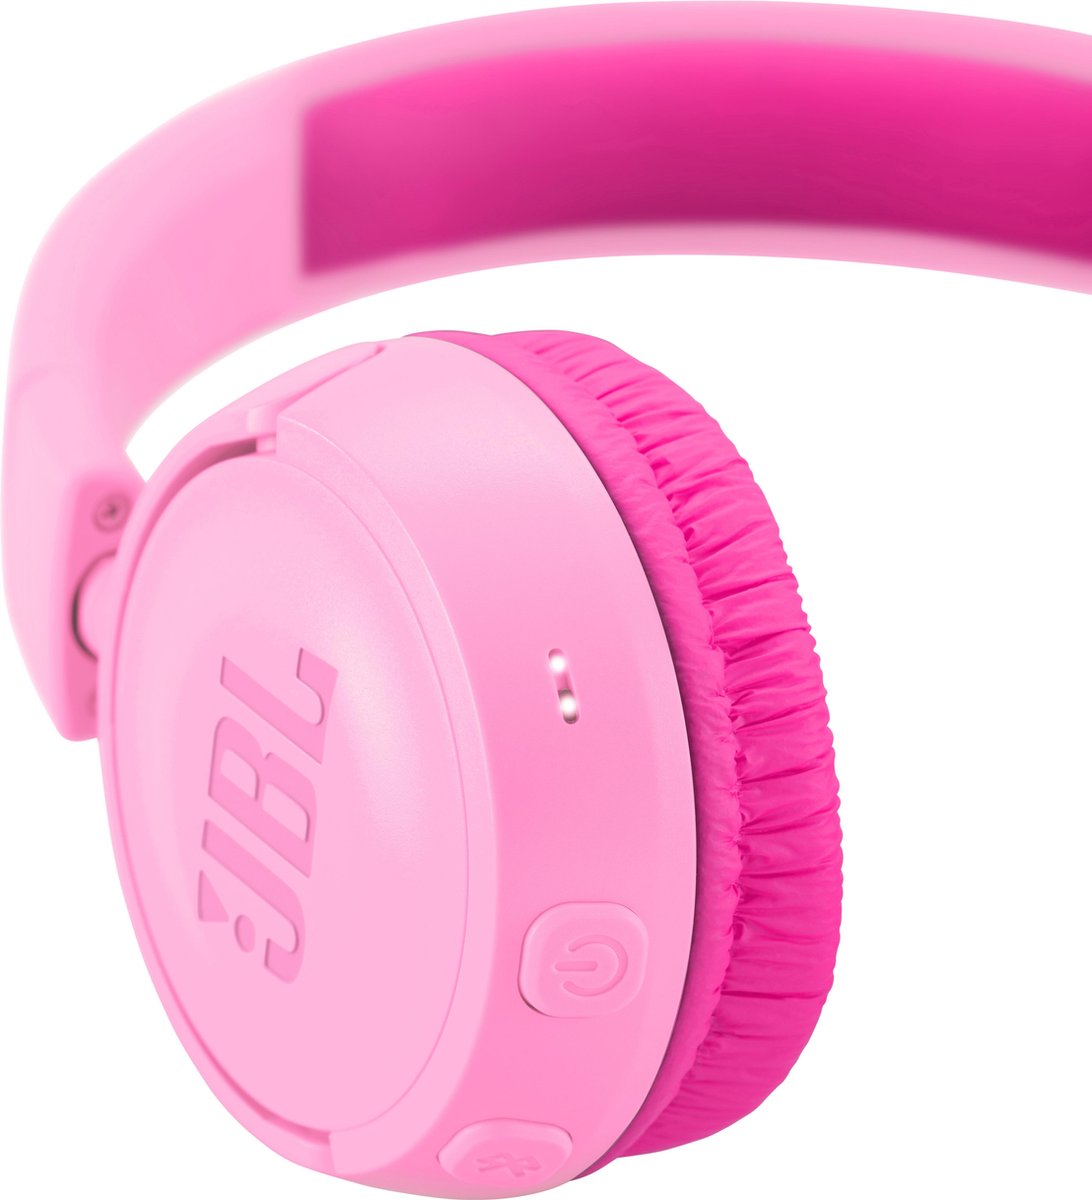 JBL JR300BT Roze - Draadloze on-ear kids koptelefoon | bol.com